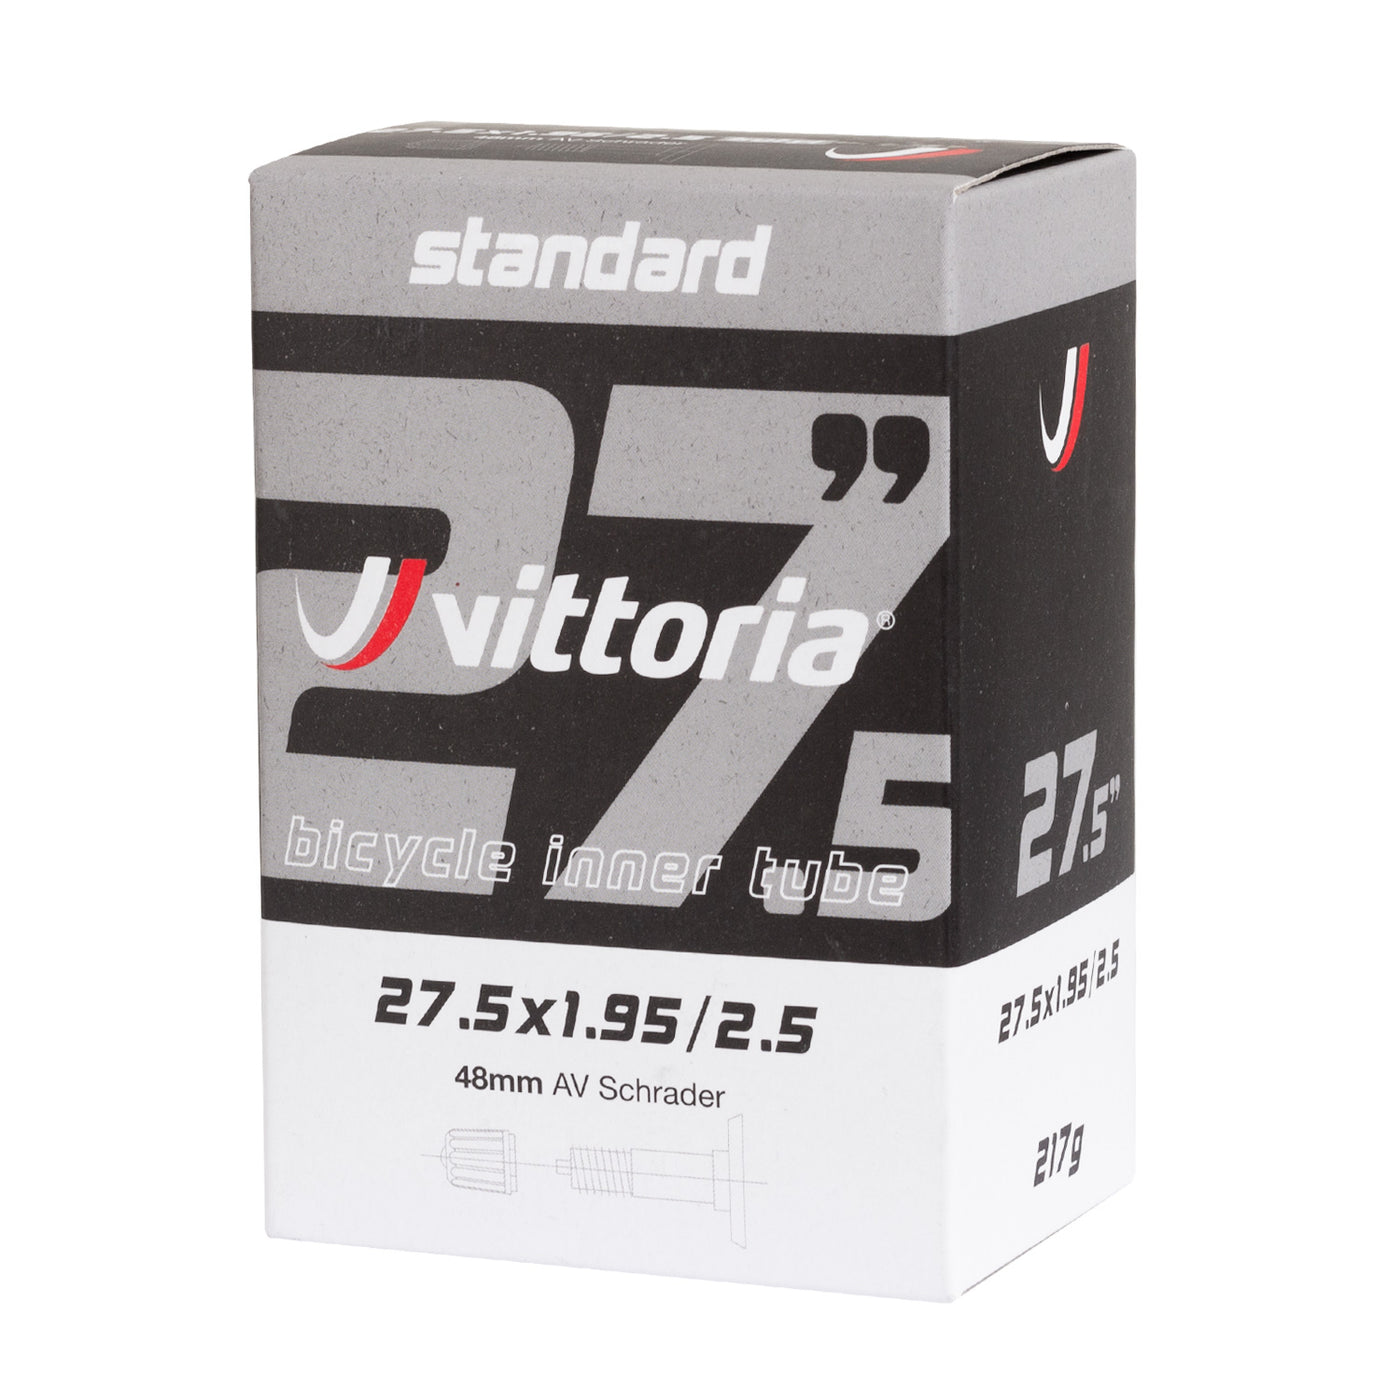 Vittoria Standard 27.5X1.95/2.50 Schrader 48mm Tube - Cyclop.in